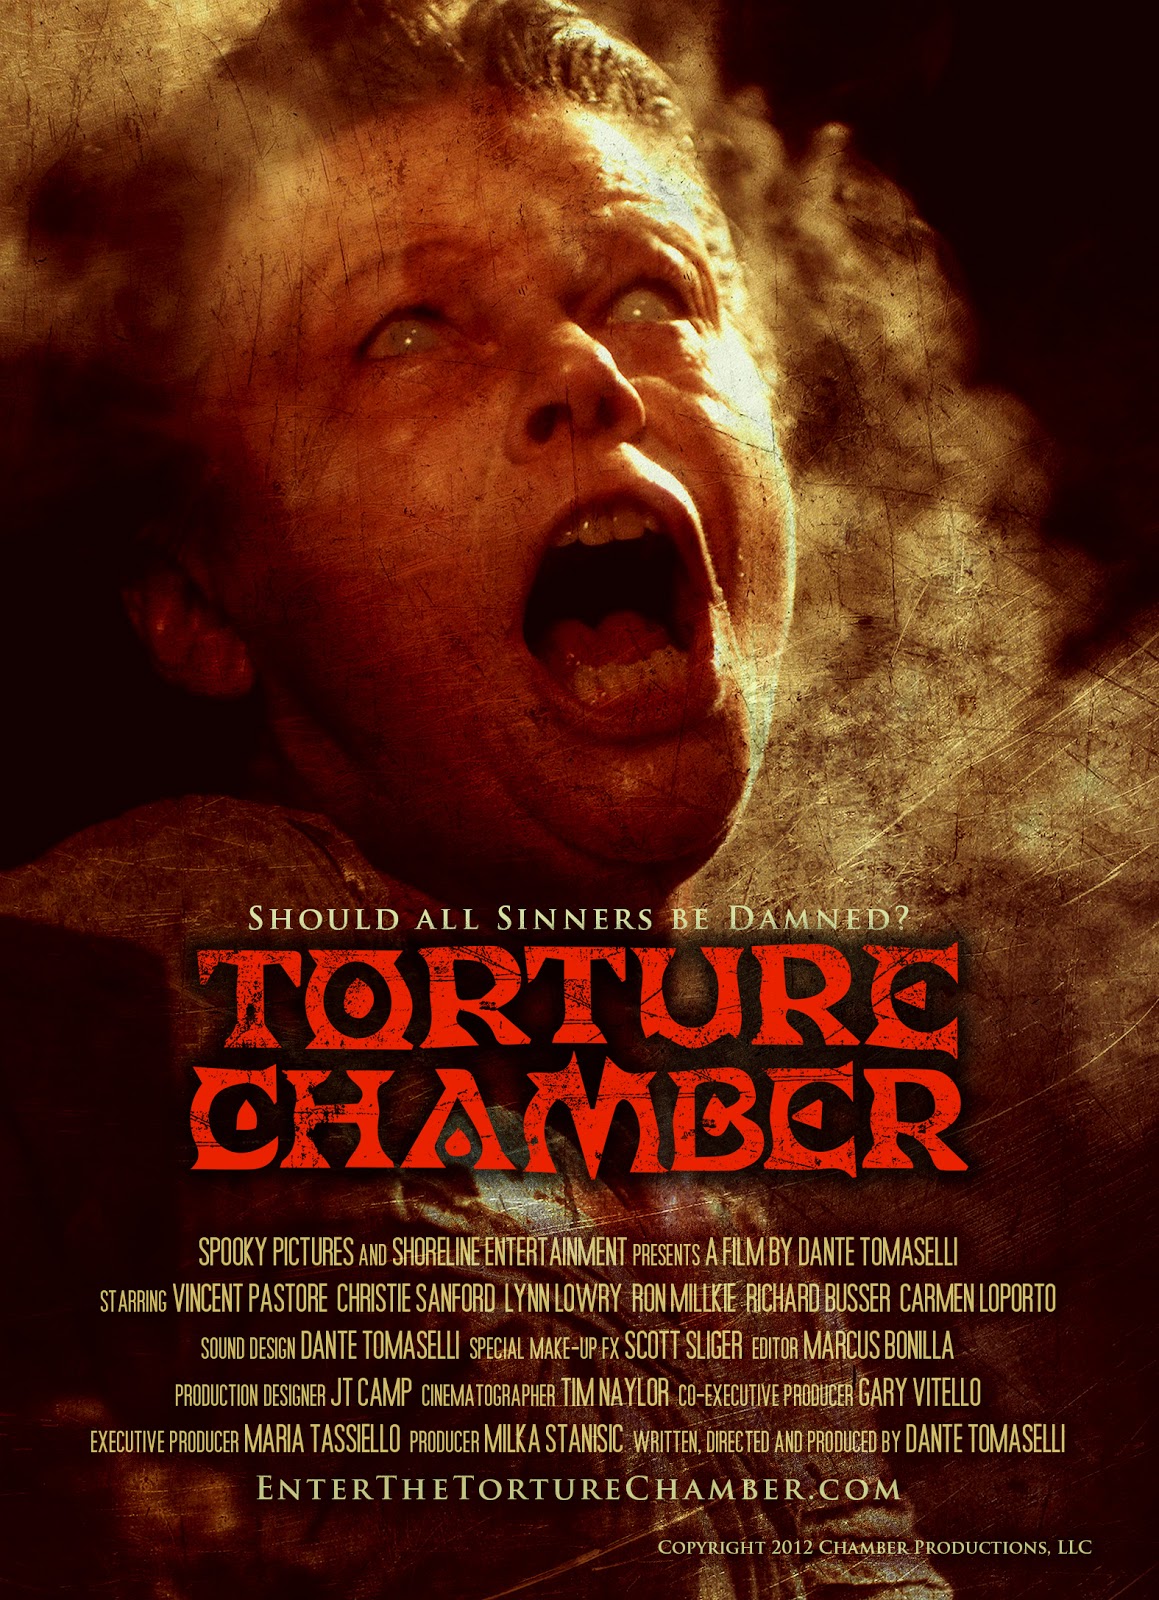 http://1.bp.blogspot.com/-Zc8_e2OYdtQ/UKxA1hU3a_I/AAAAAAAACFE/FmHM9GuK5Wc/s1600/Torture+Chamber+Poster+02.jpg